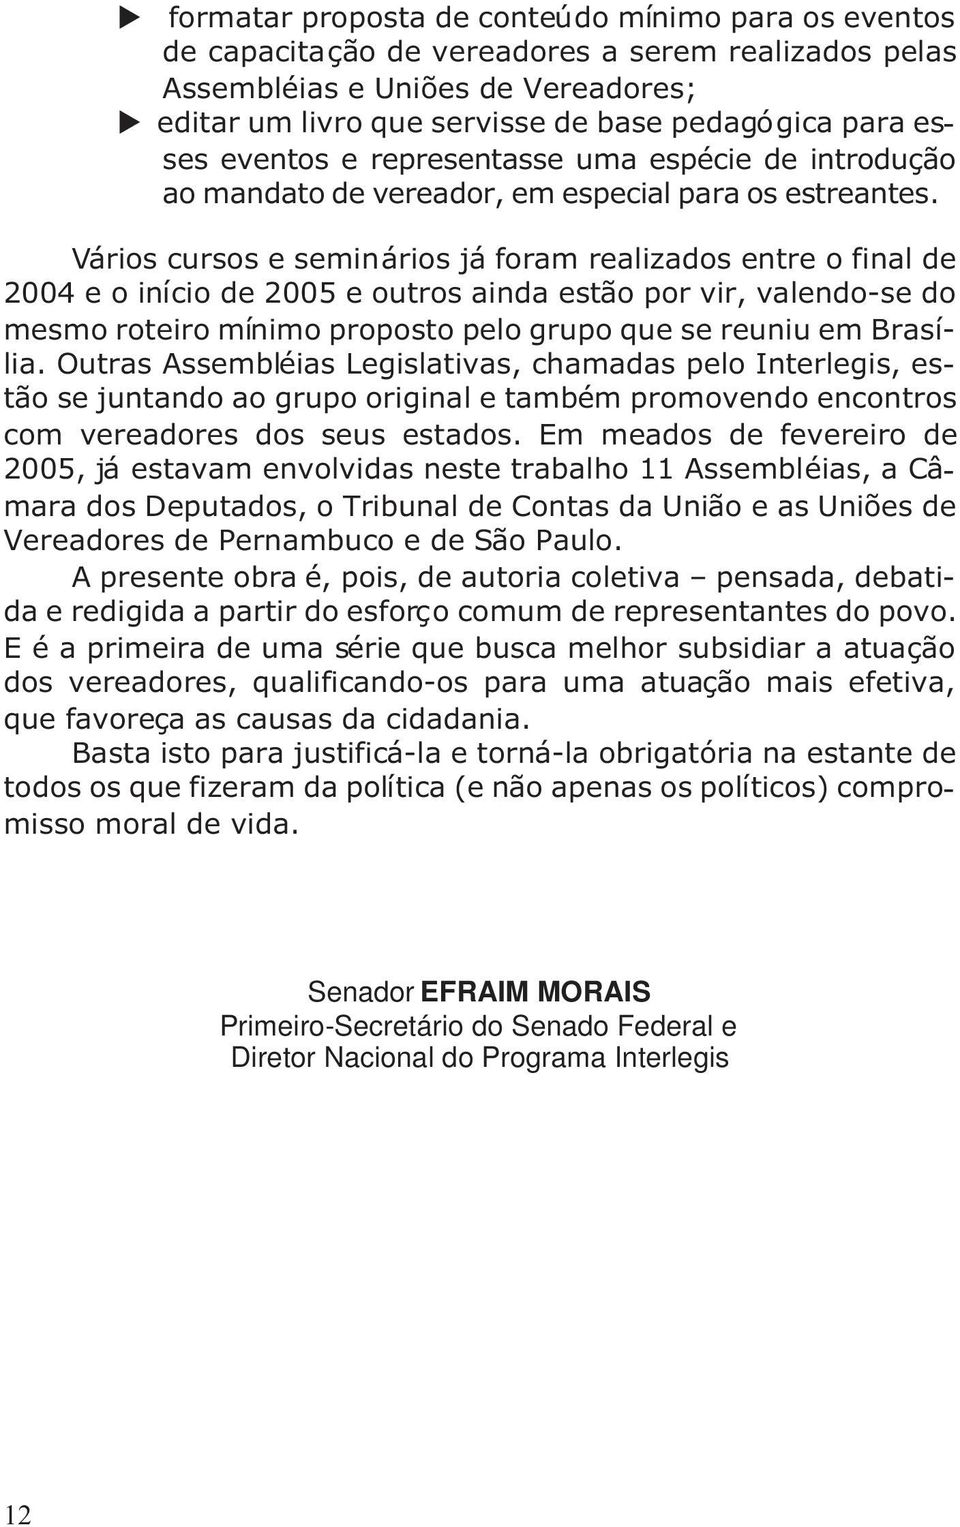 Vários cursos e seminários já foram realizados entre o final de 2004eoiníciode2005 e outros ainda estão por vir, valendo-se do mesmo roteiro mínimo proposto pelo grupo que se reuniu em Brasília.